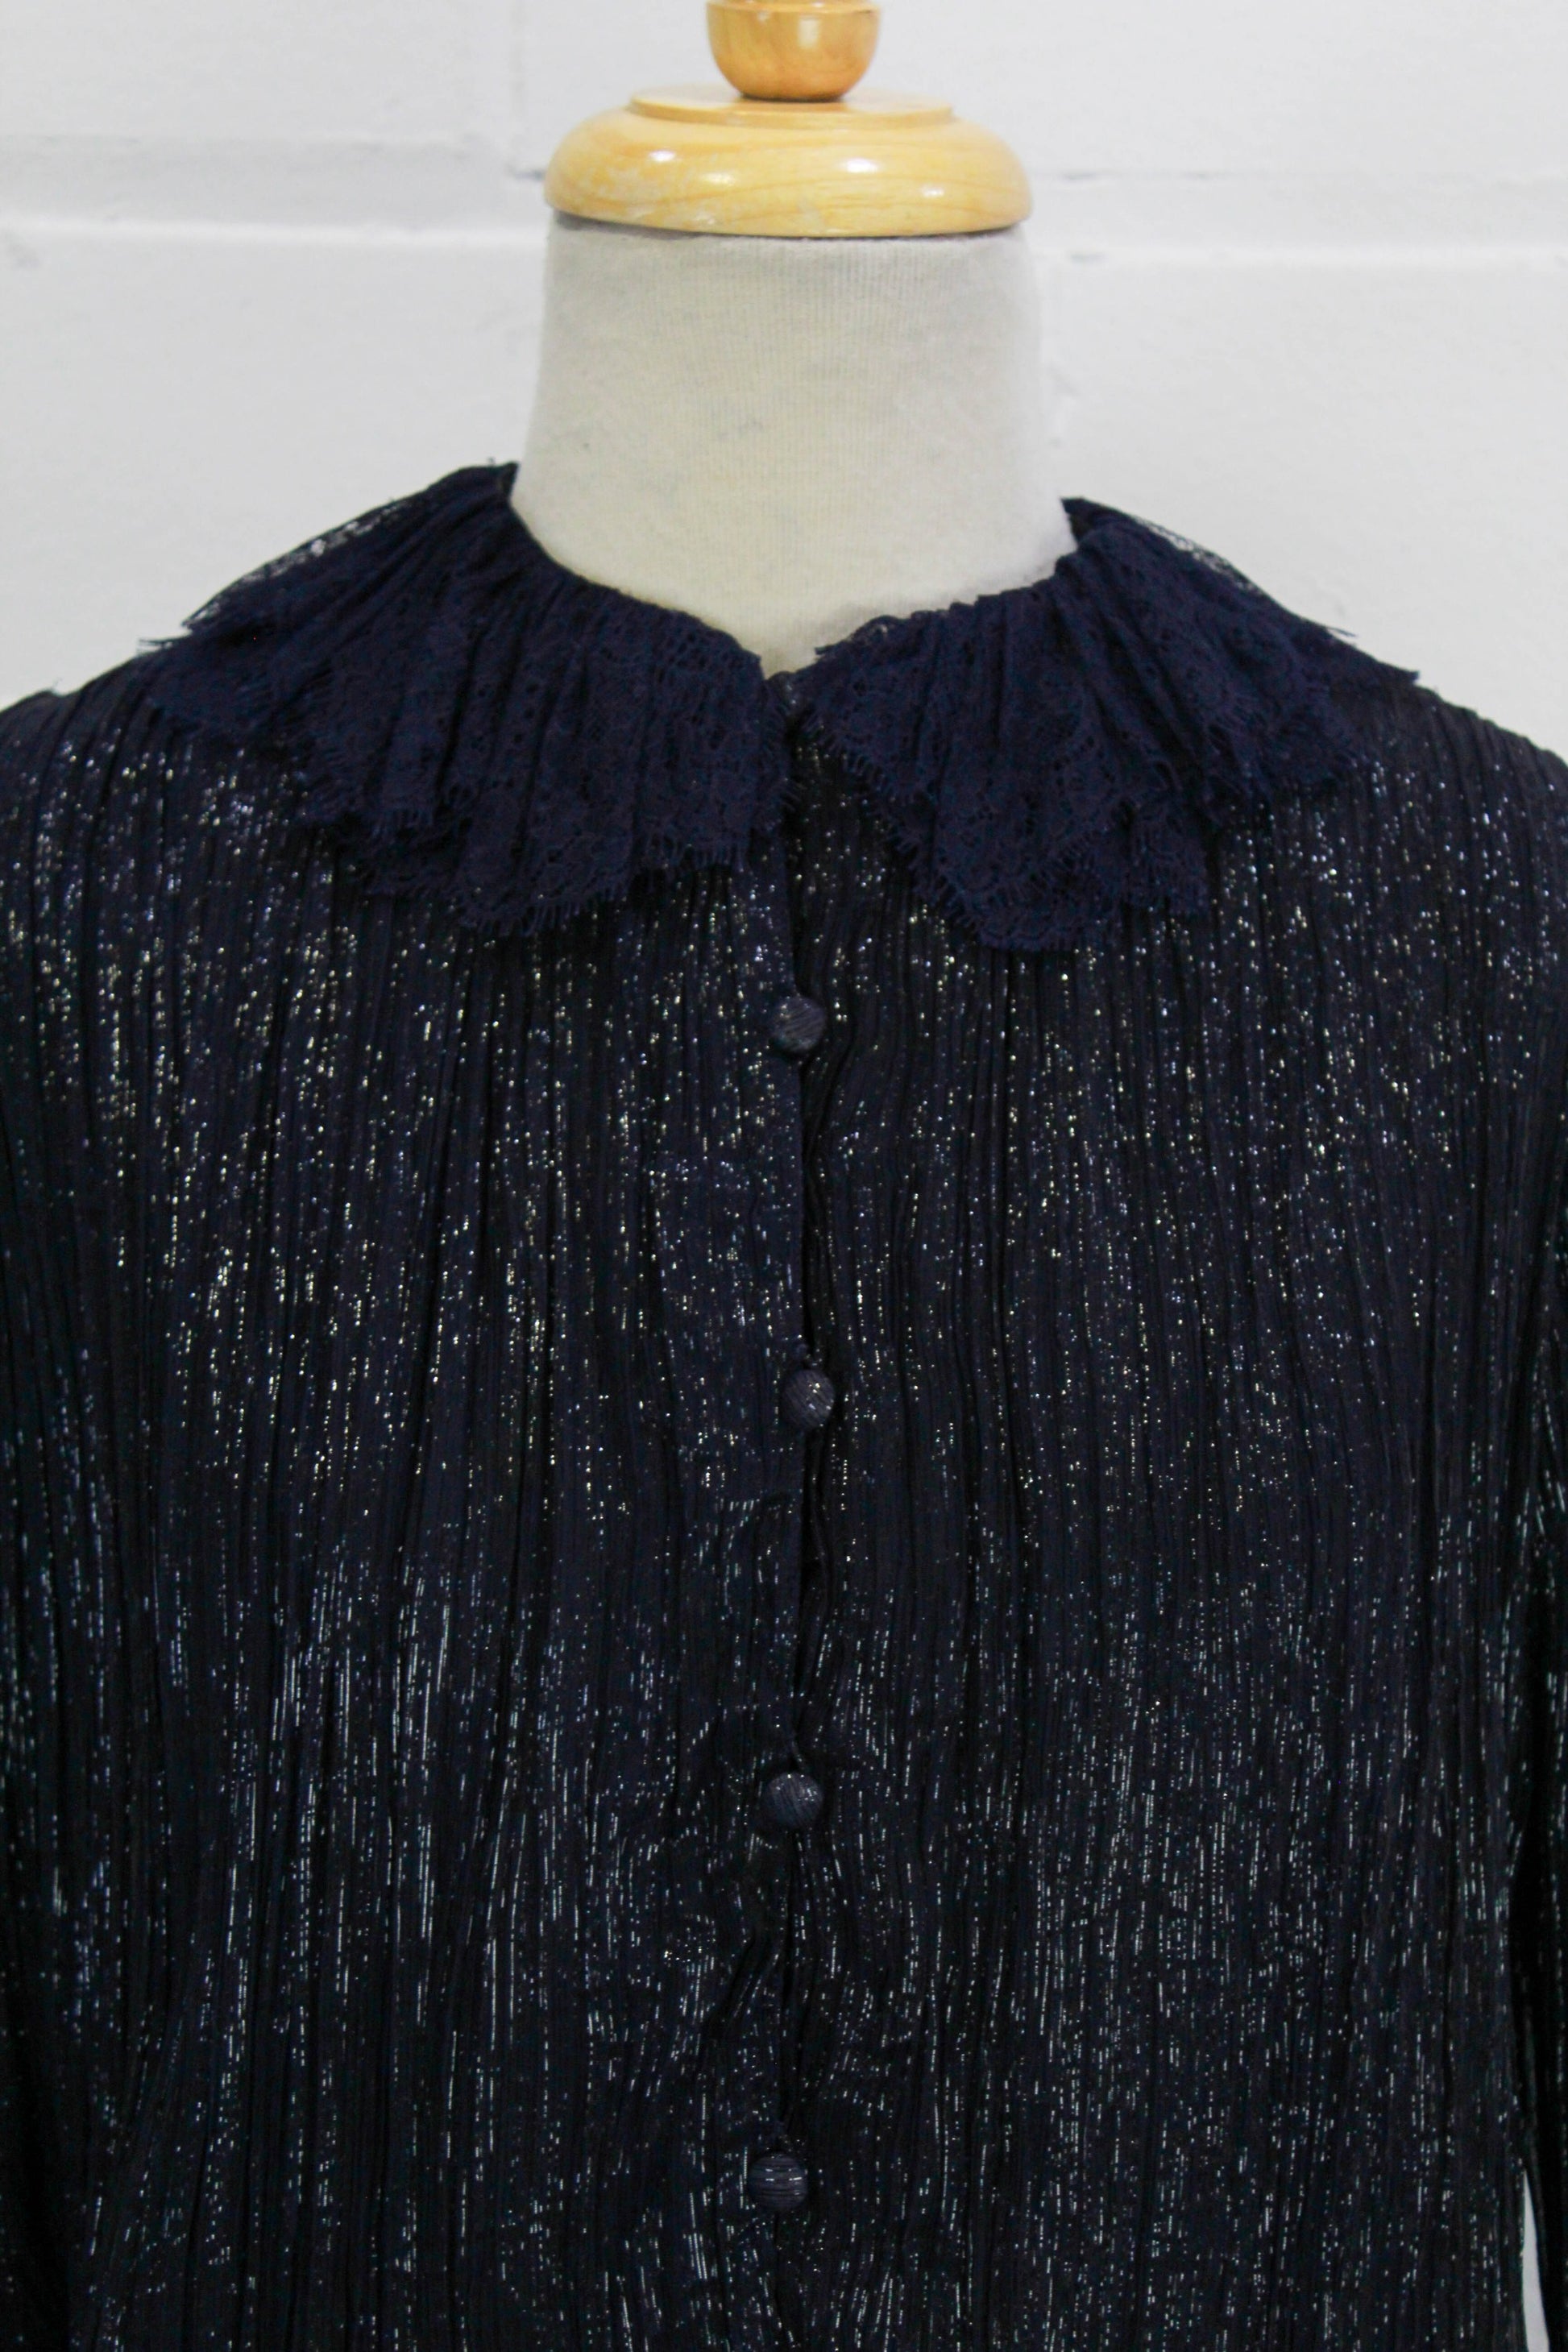 Vintage Louis Feraud Silk Shirt Blouse Black White Check Deadstock Size 10